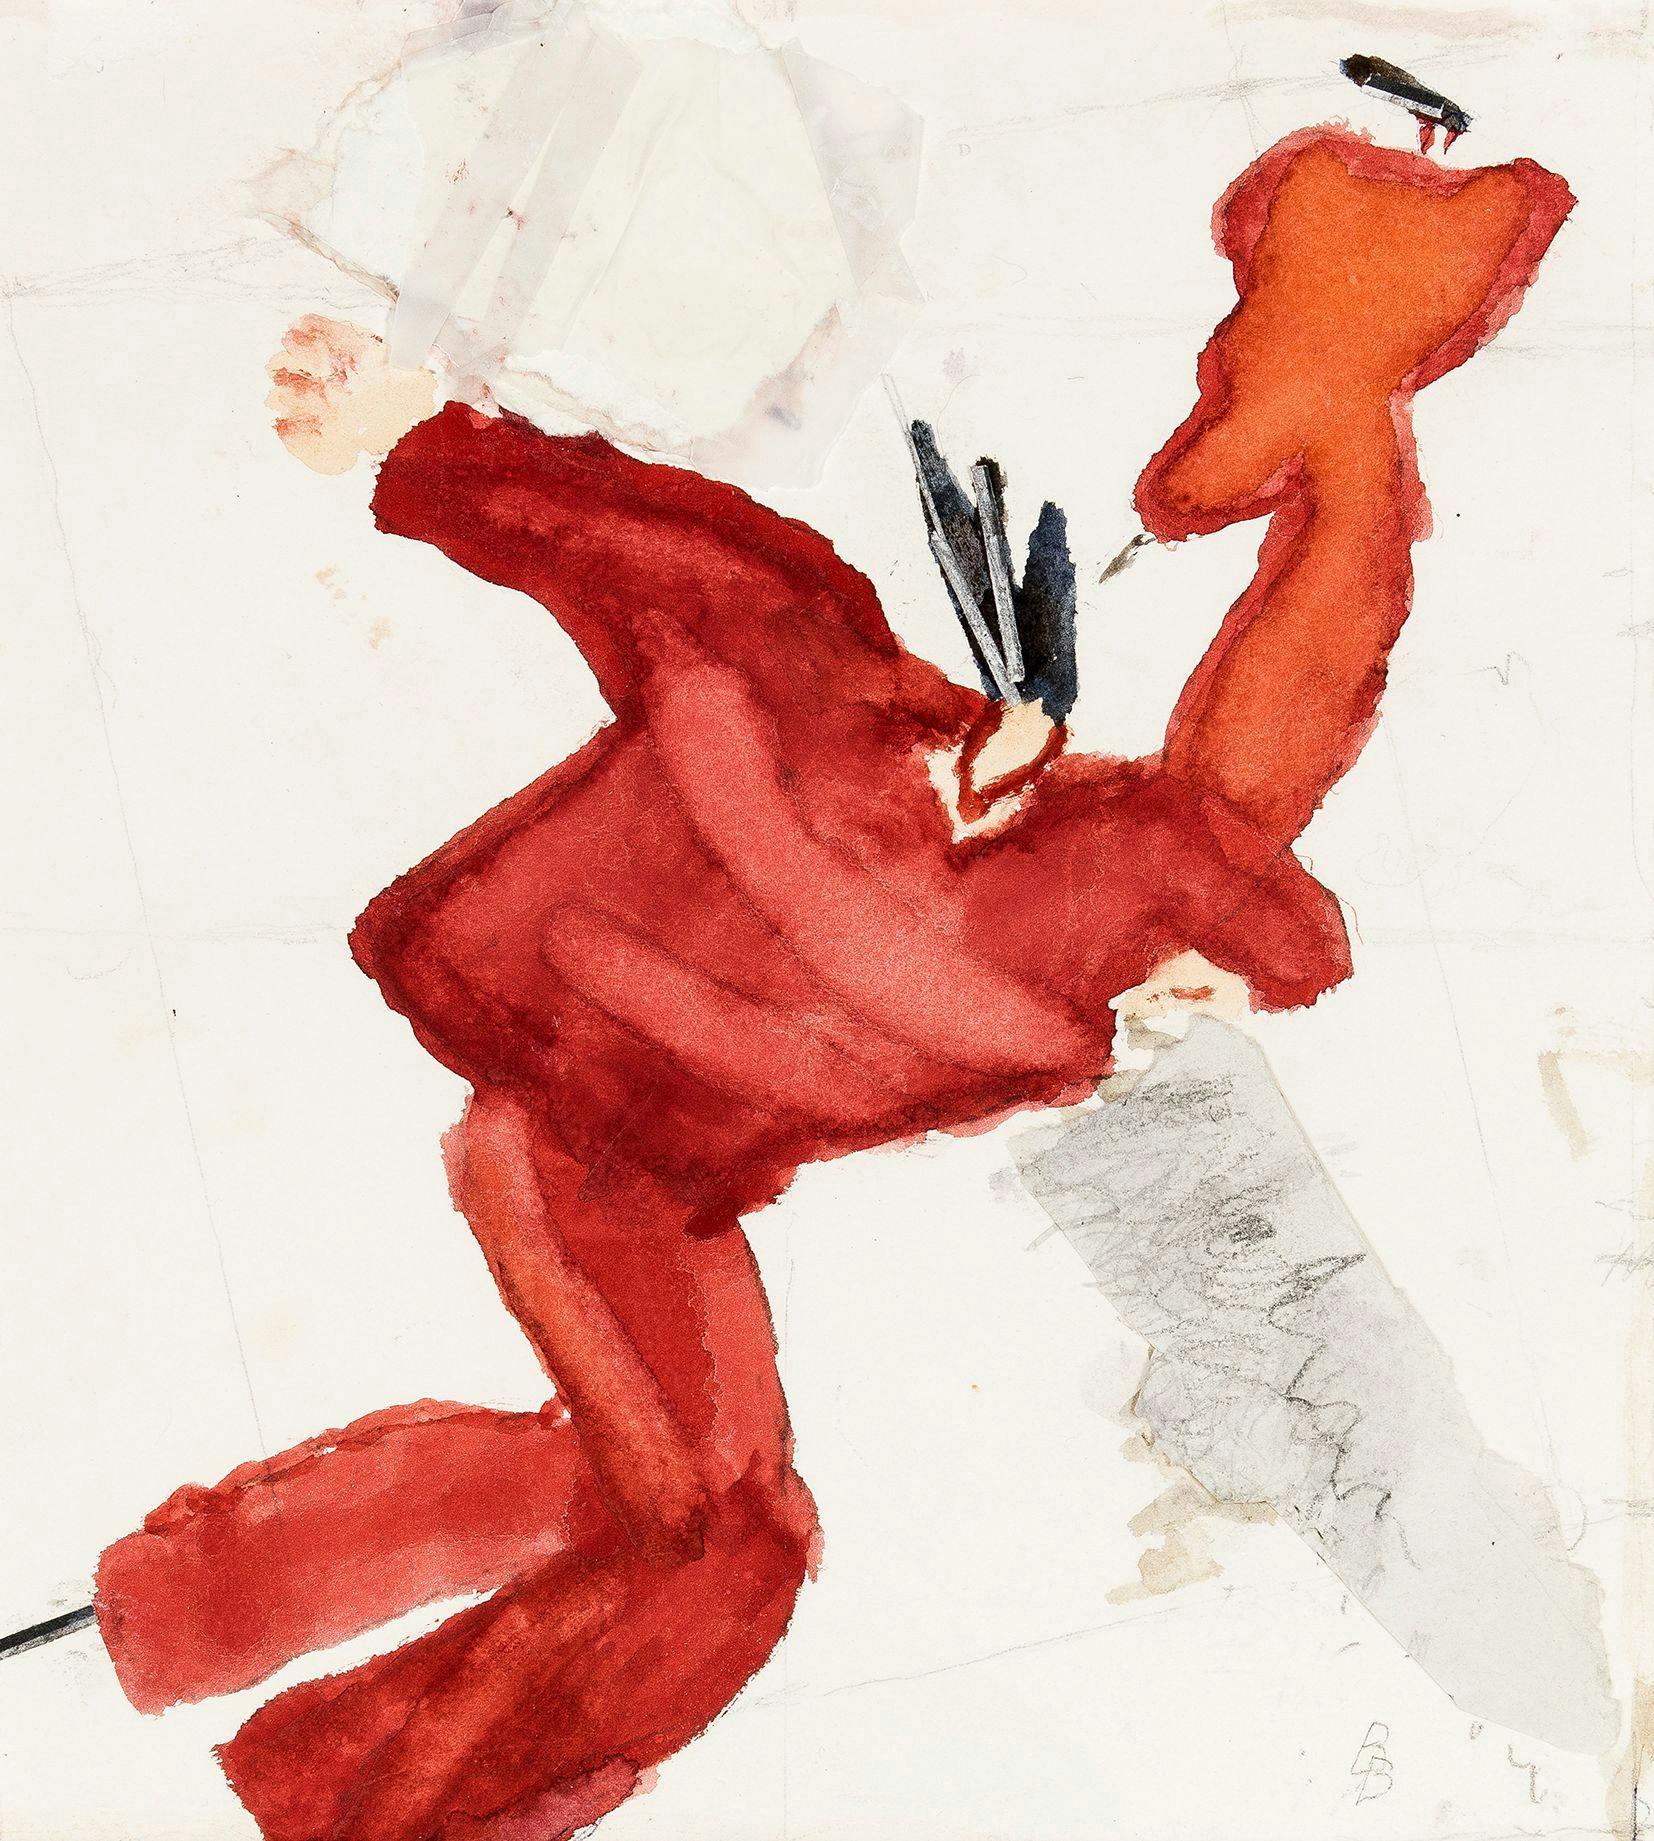 Konstverk av Birgit Broms föreställande två skridskoåker i rött mot vit bakgrund. Akvarell och collage.